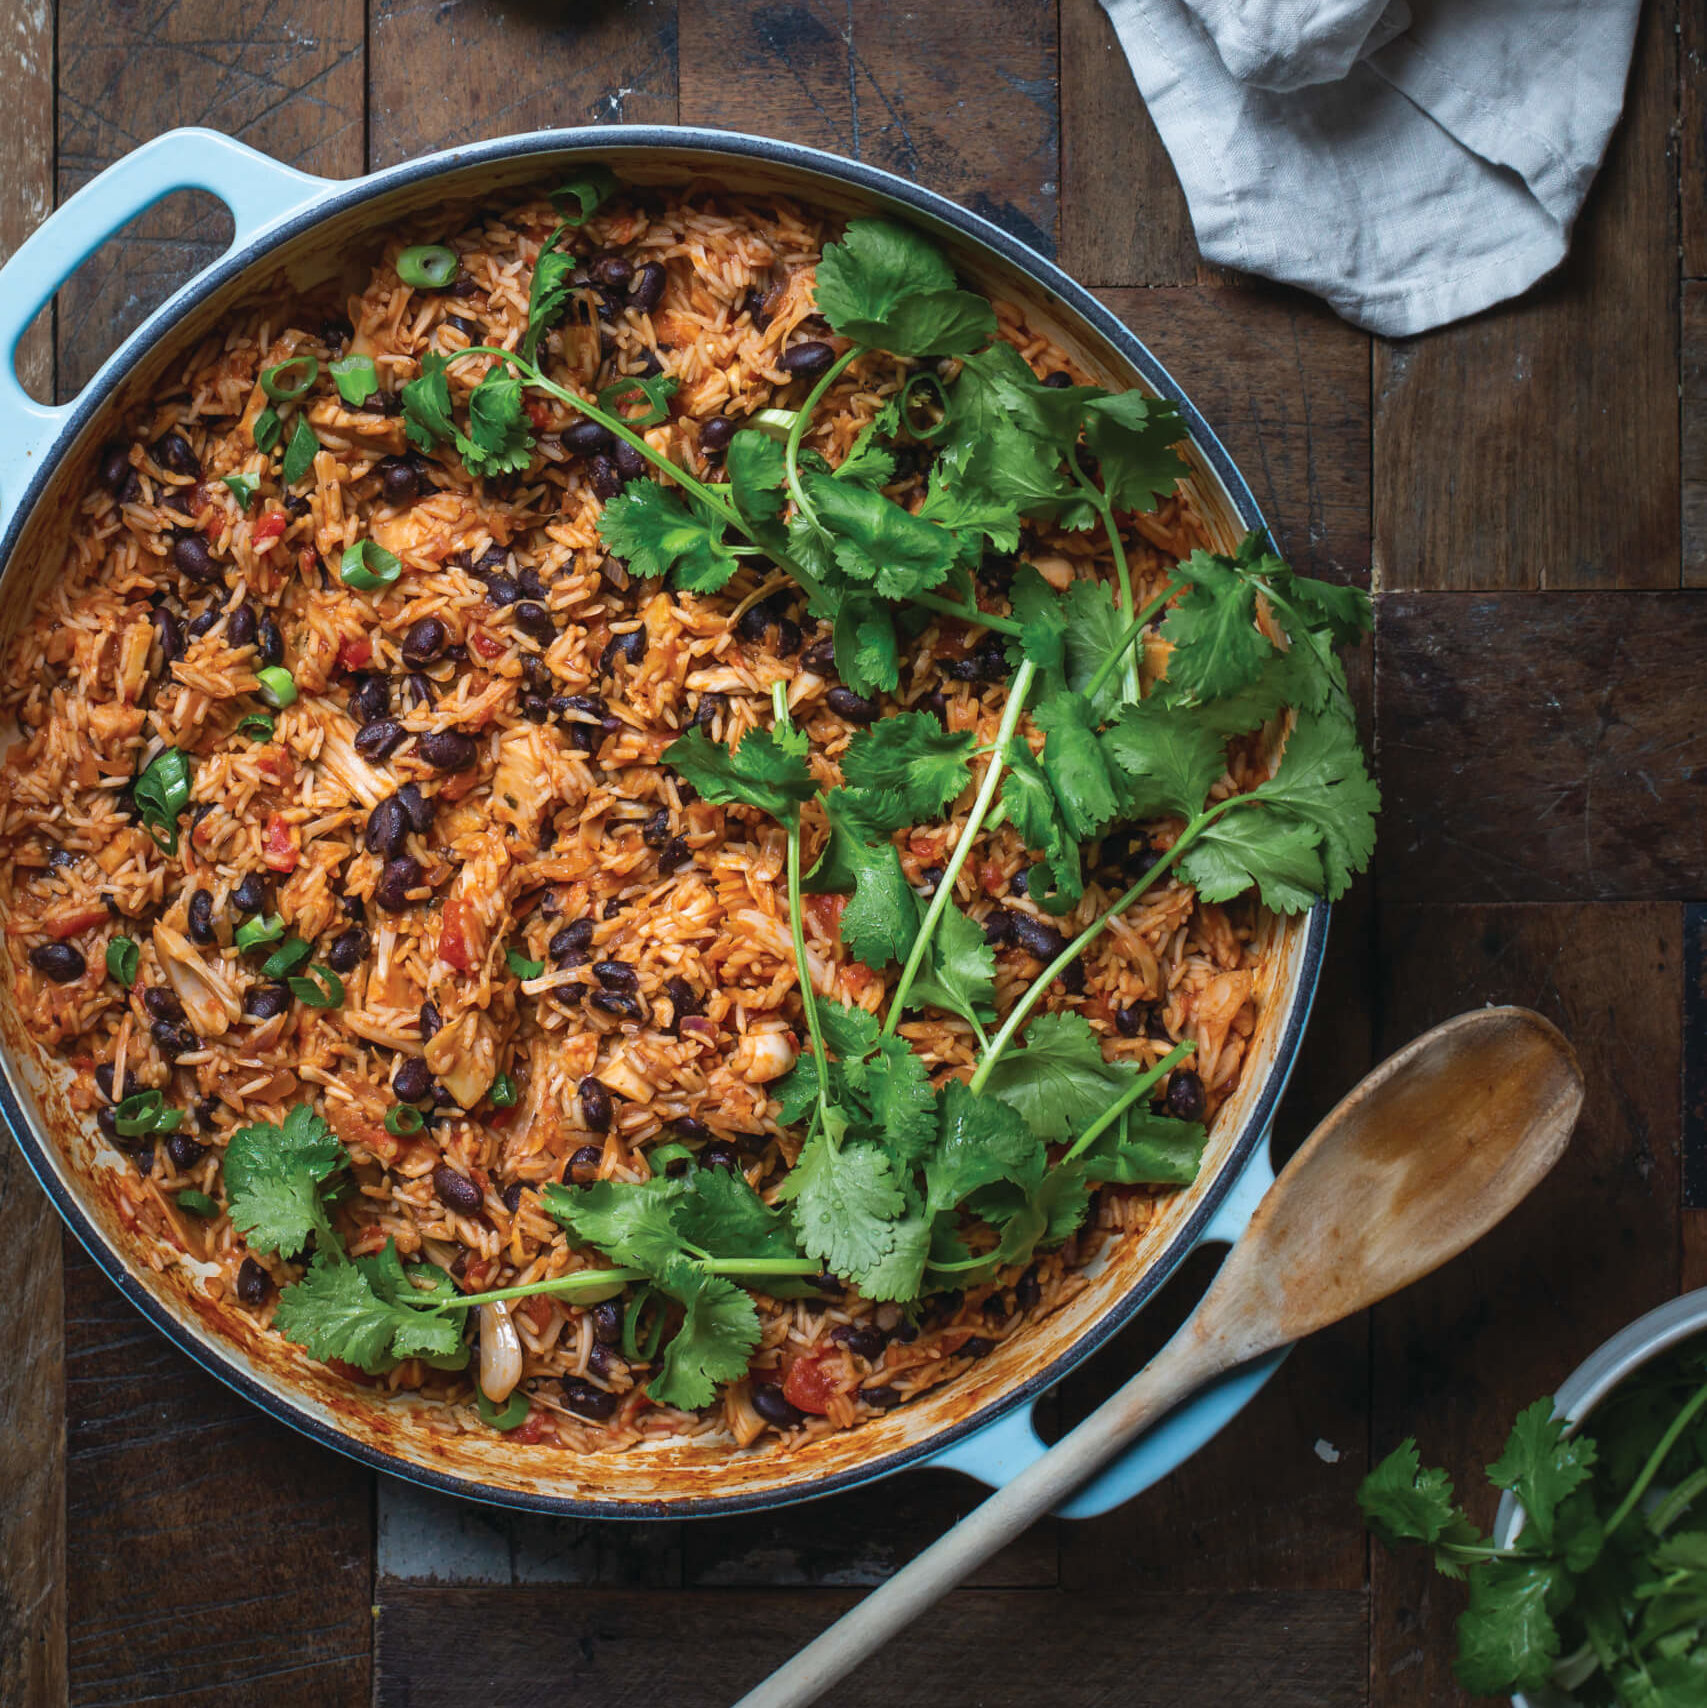 Amanda Logan's vegan one-pan Mexican Jackfruit and Rice